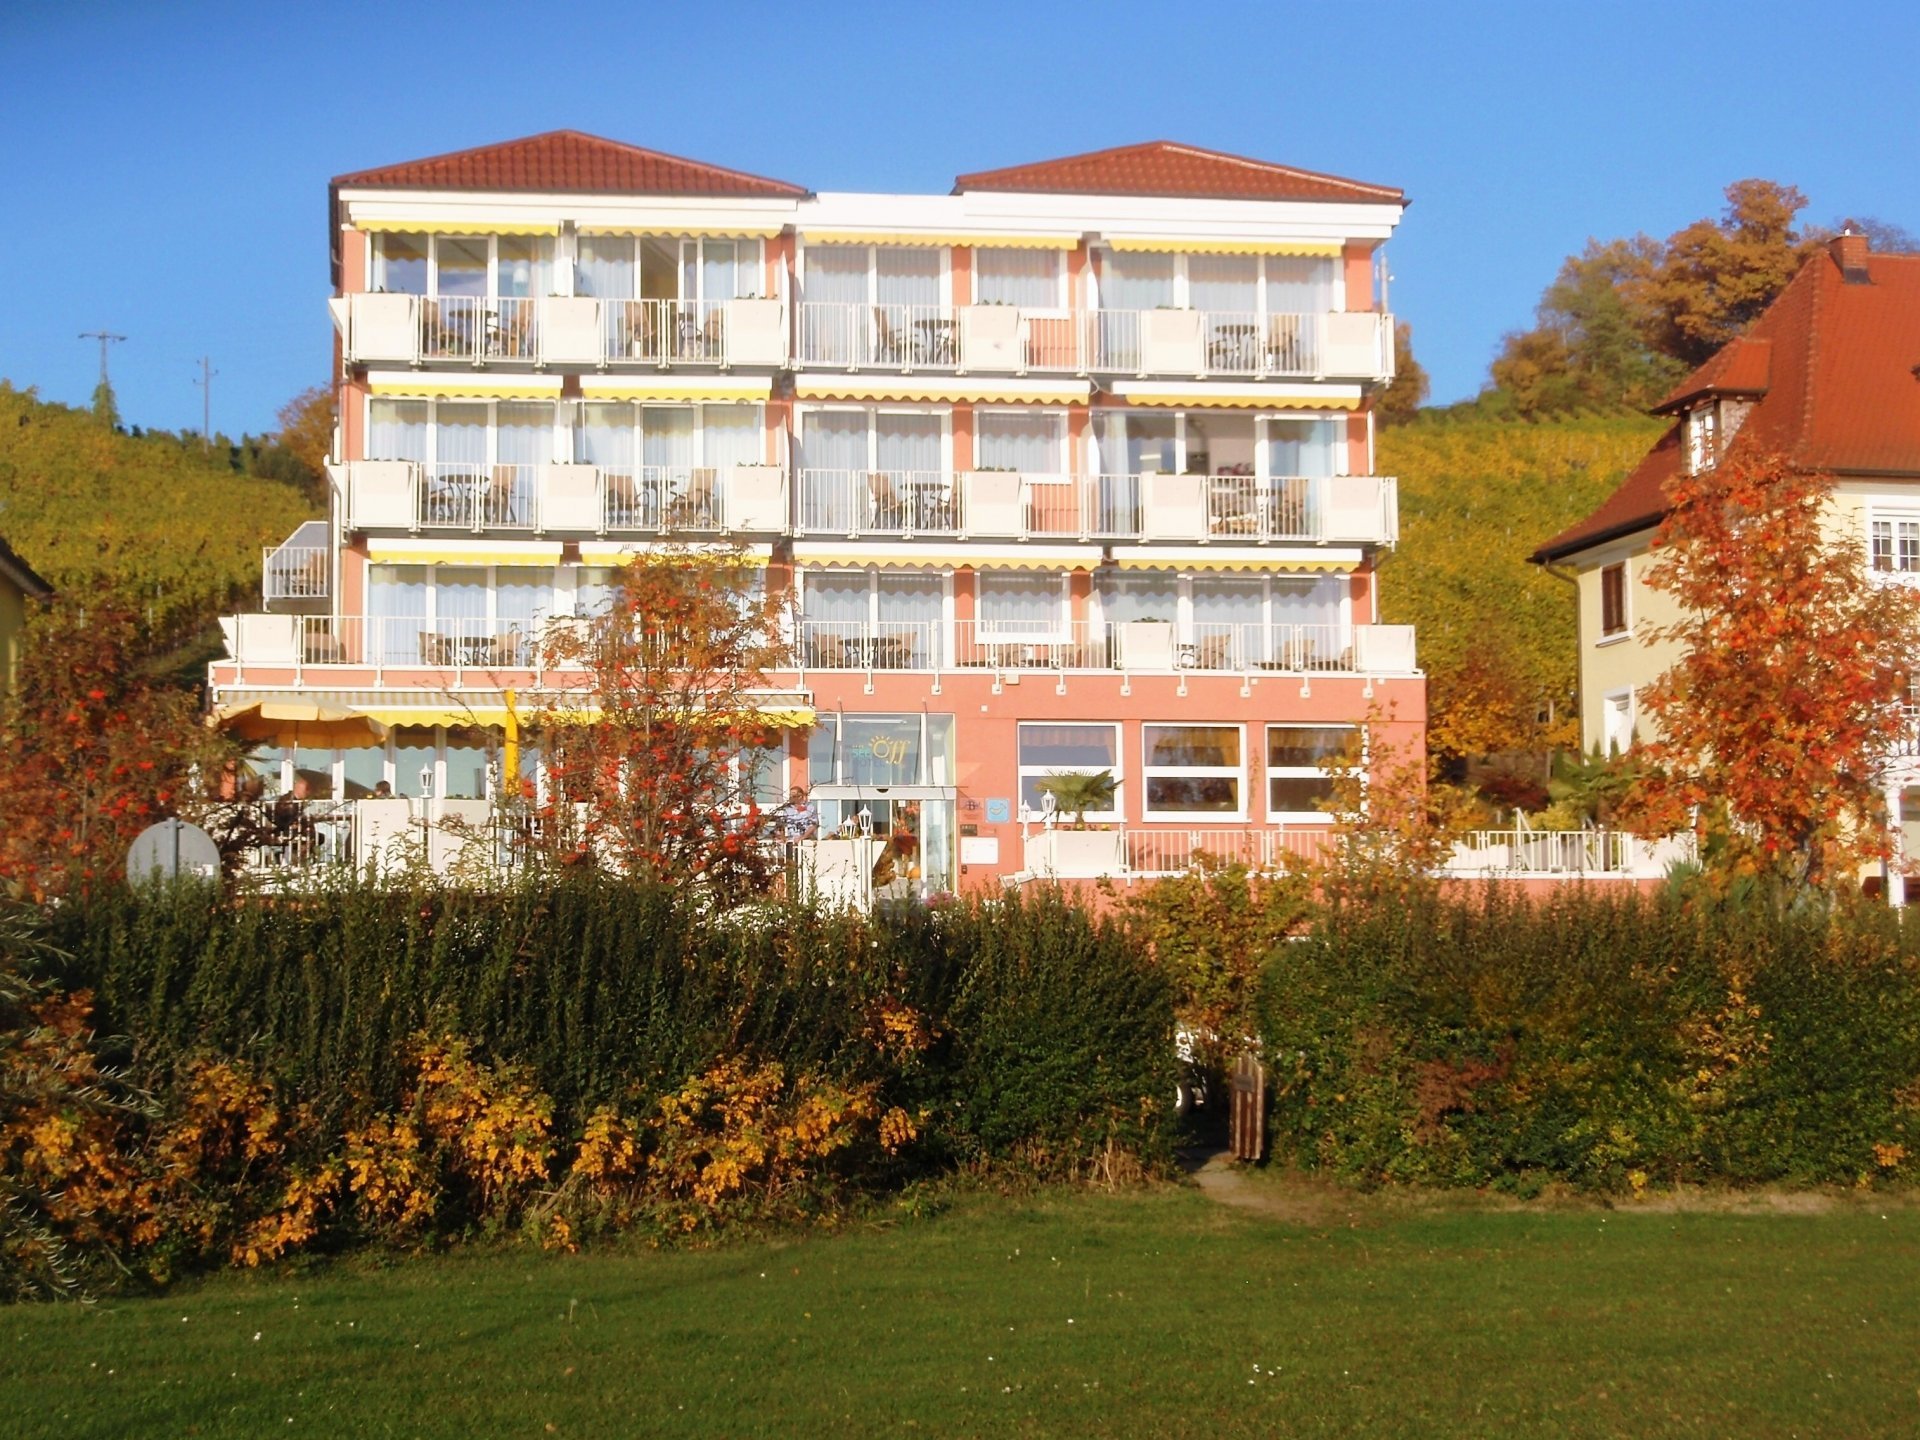 Osterhasen Spezial-Arrangement (6 Nächte) – See Hotel Off  (4 Sterne) in Meersburg, Baden-Württemberg inkl. Frühstück